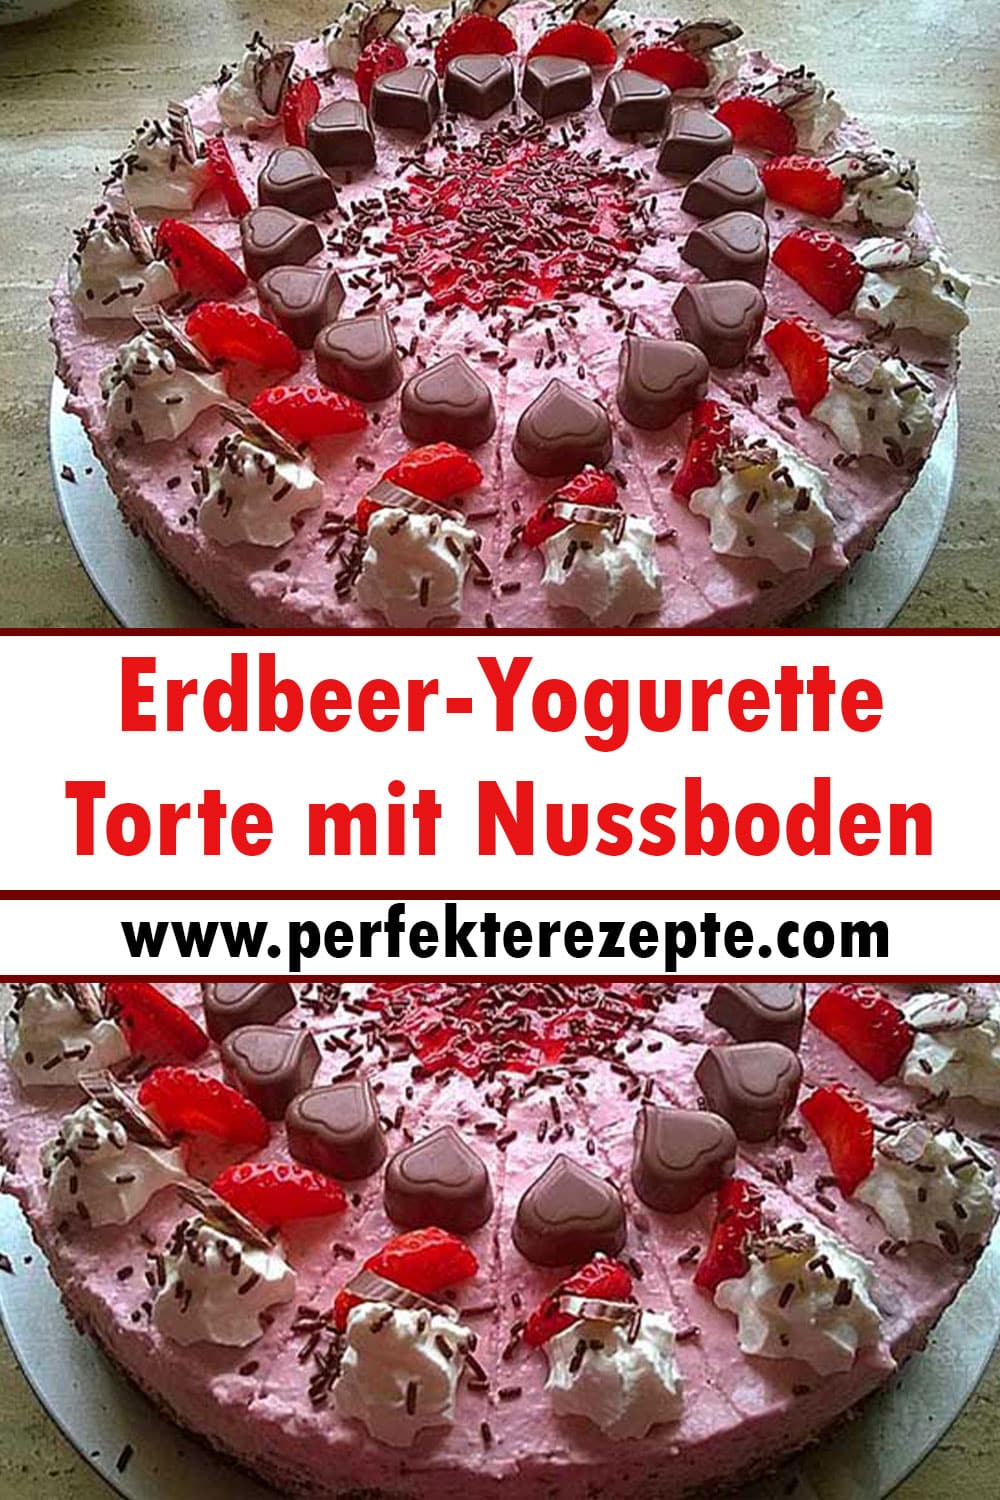 Glutenfrei Erdbeer-Yogurette-Torte mit Nussboden Rezept